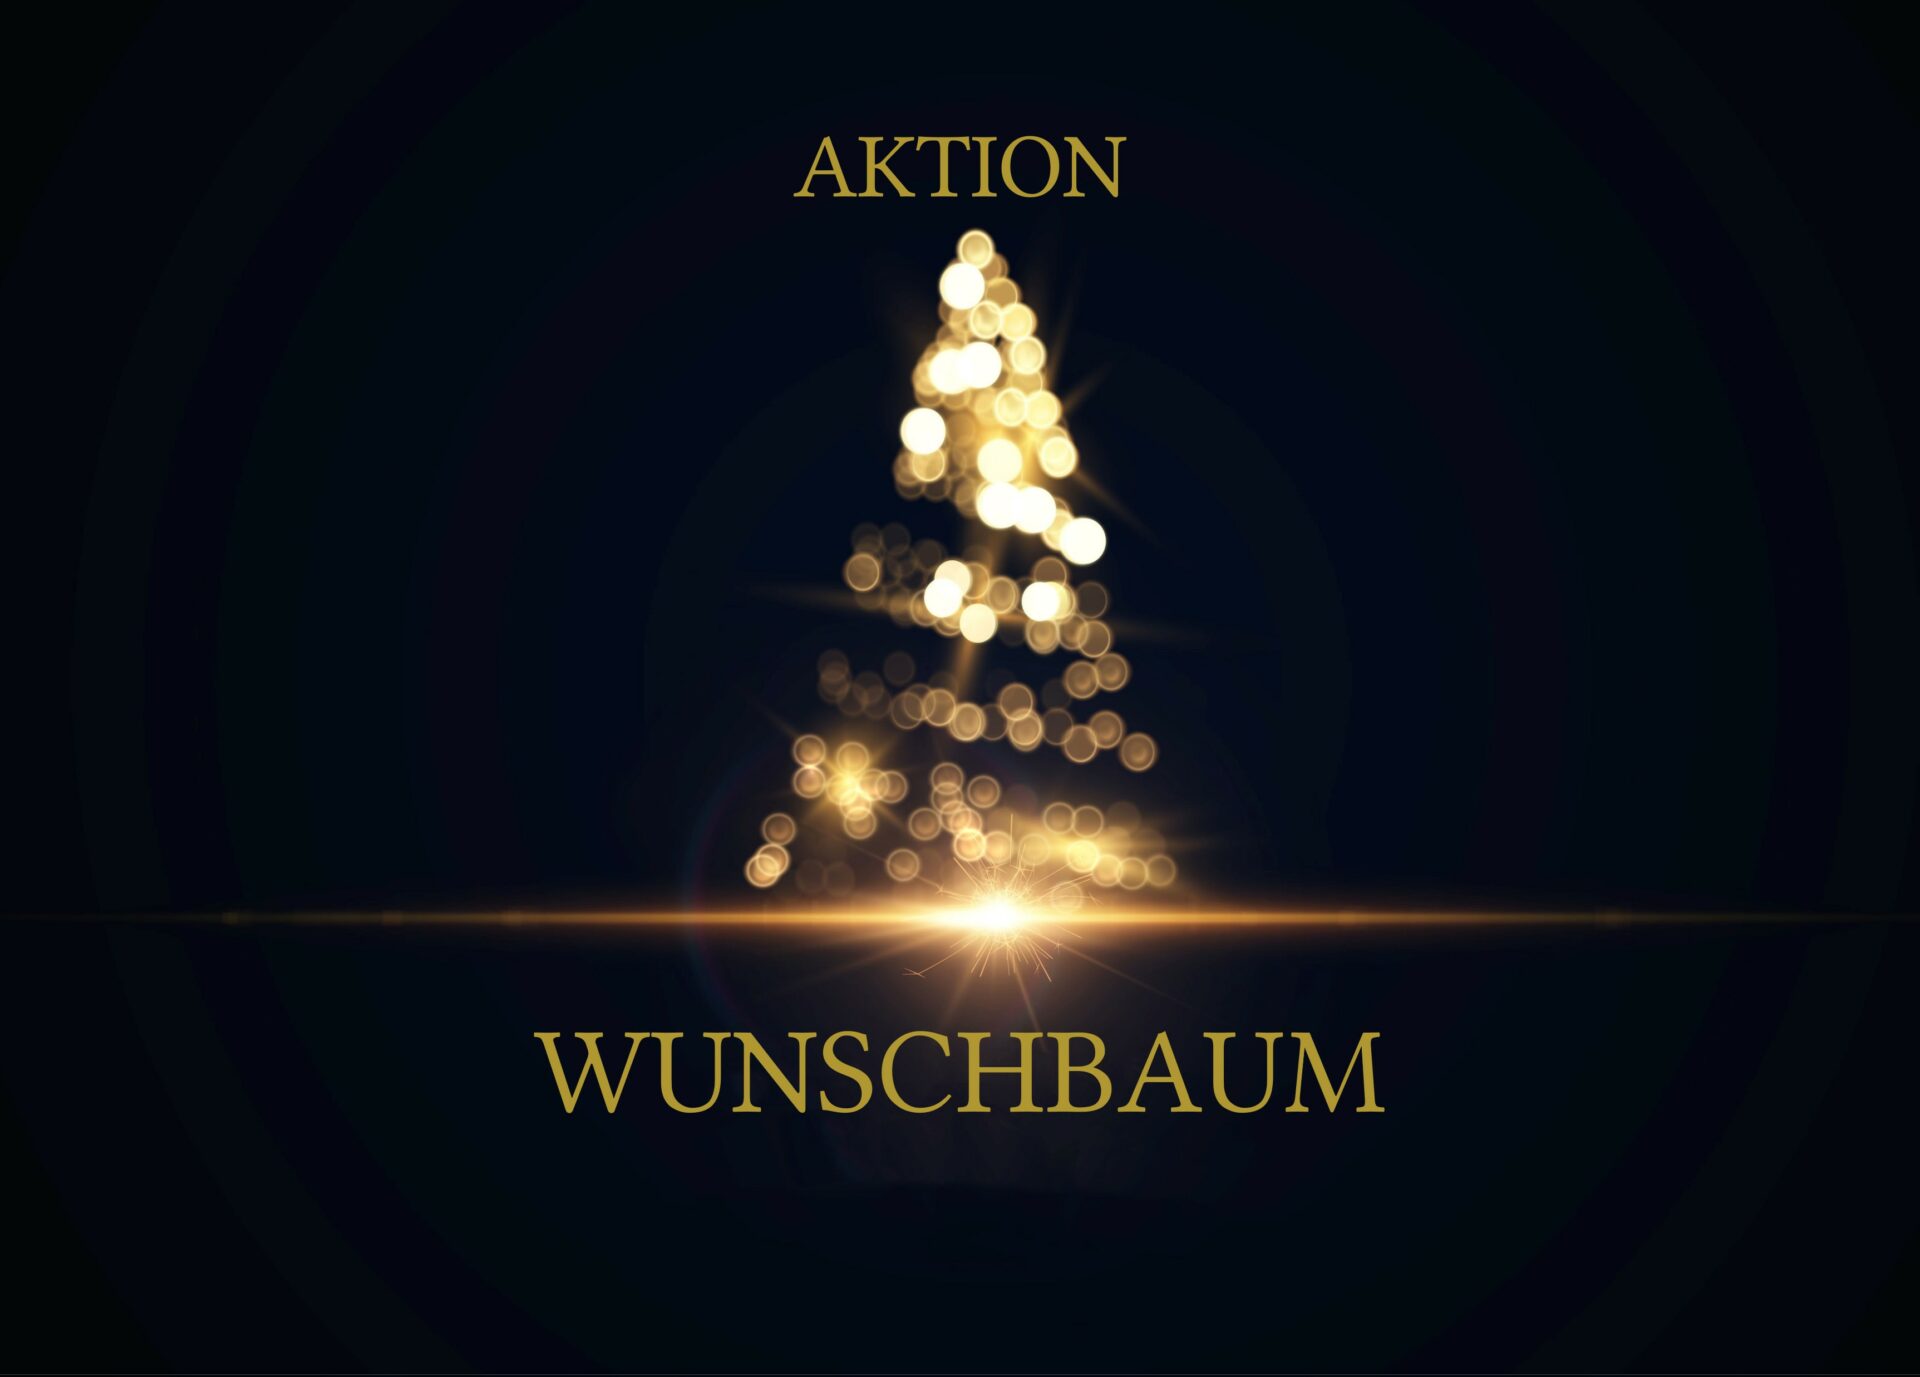 Wunschbaum Adobe